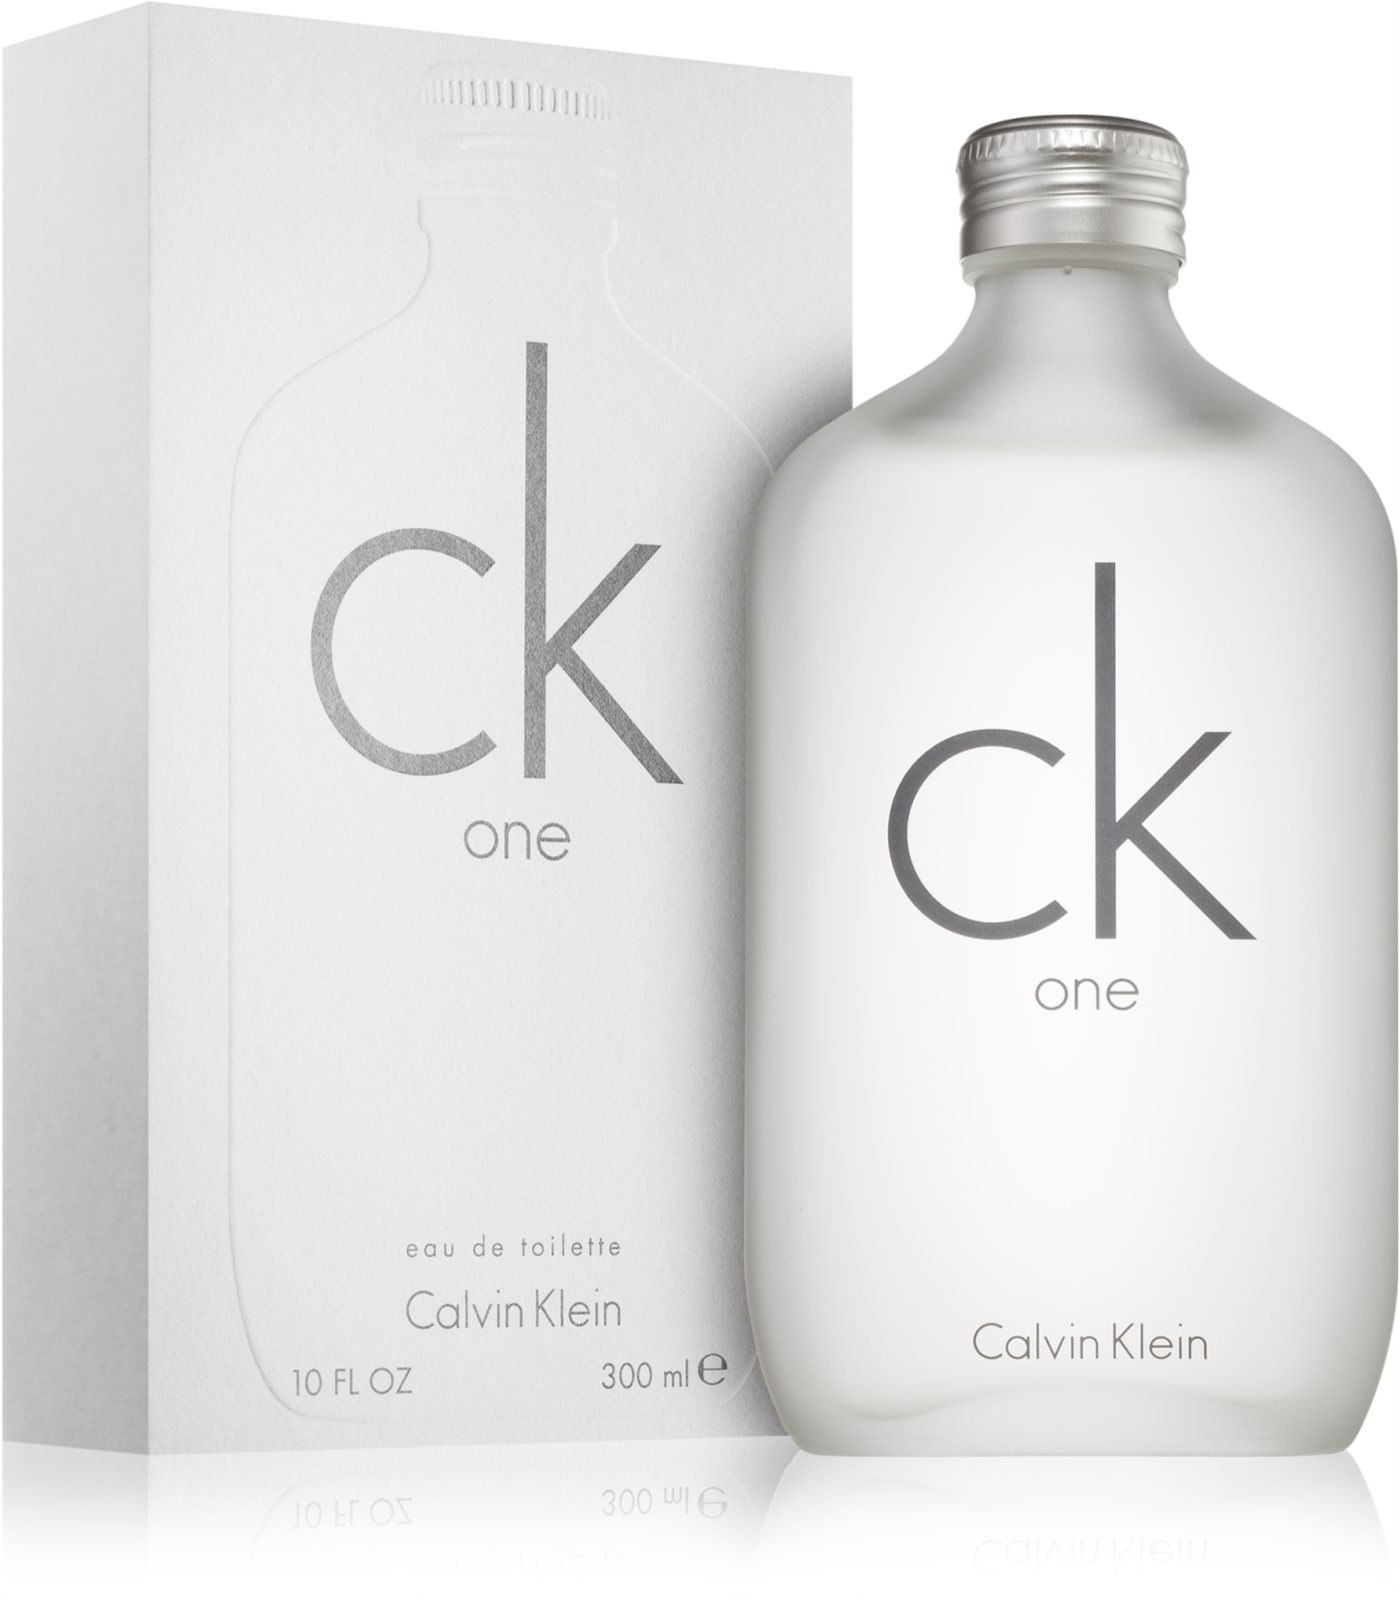 <center>Calvin Klein CK One</center>